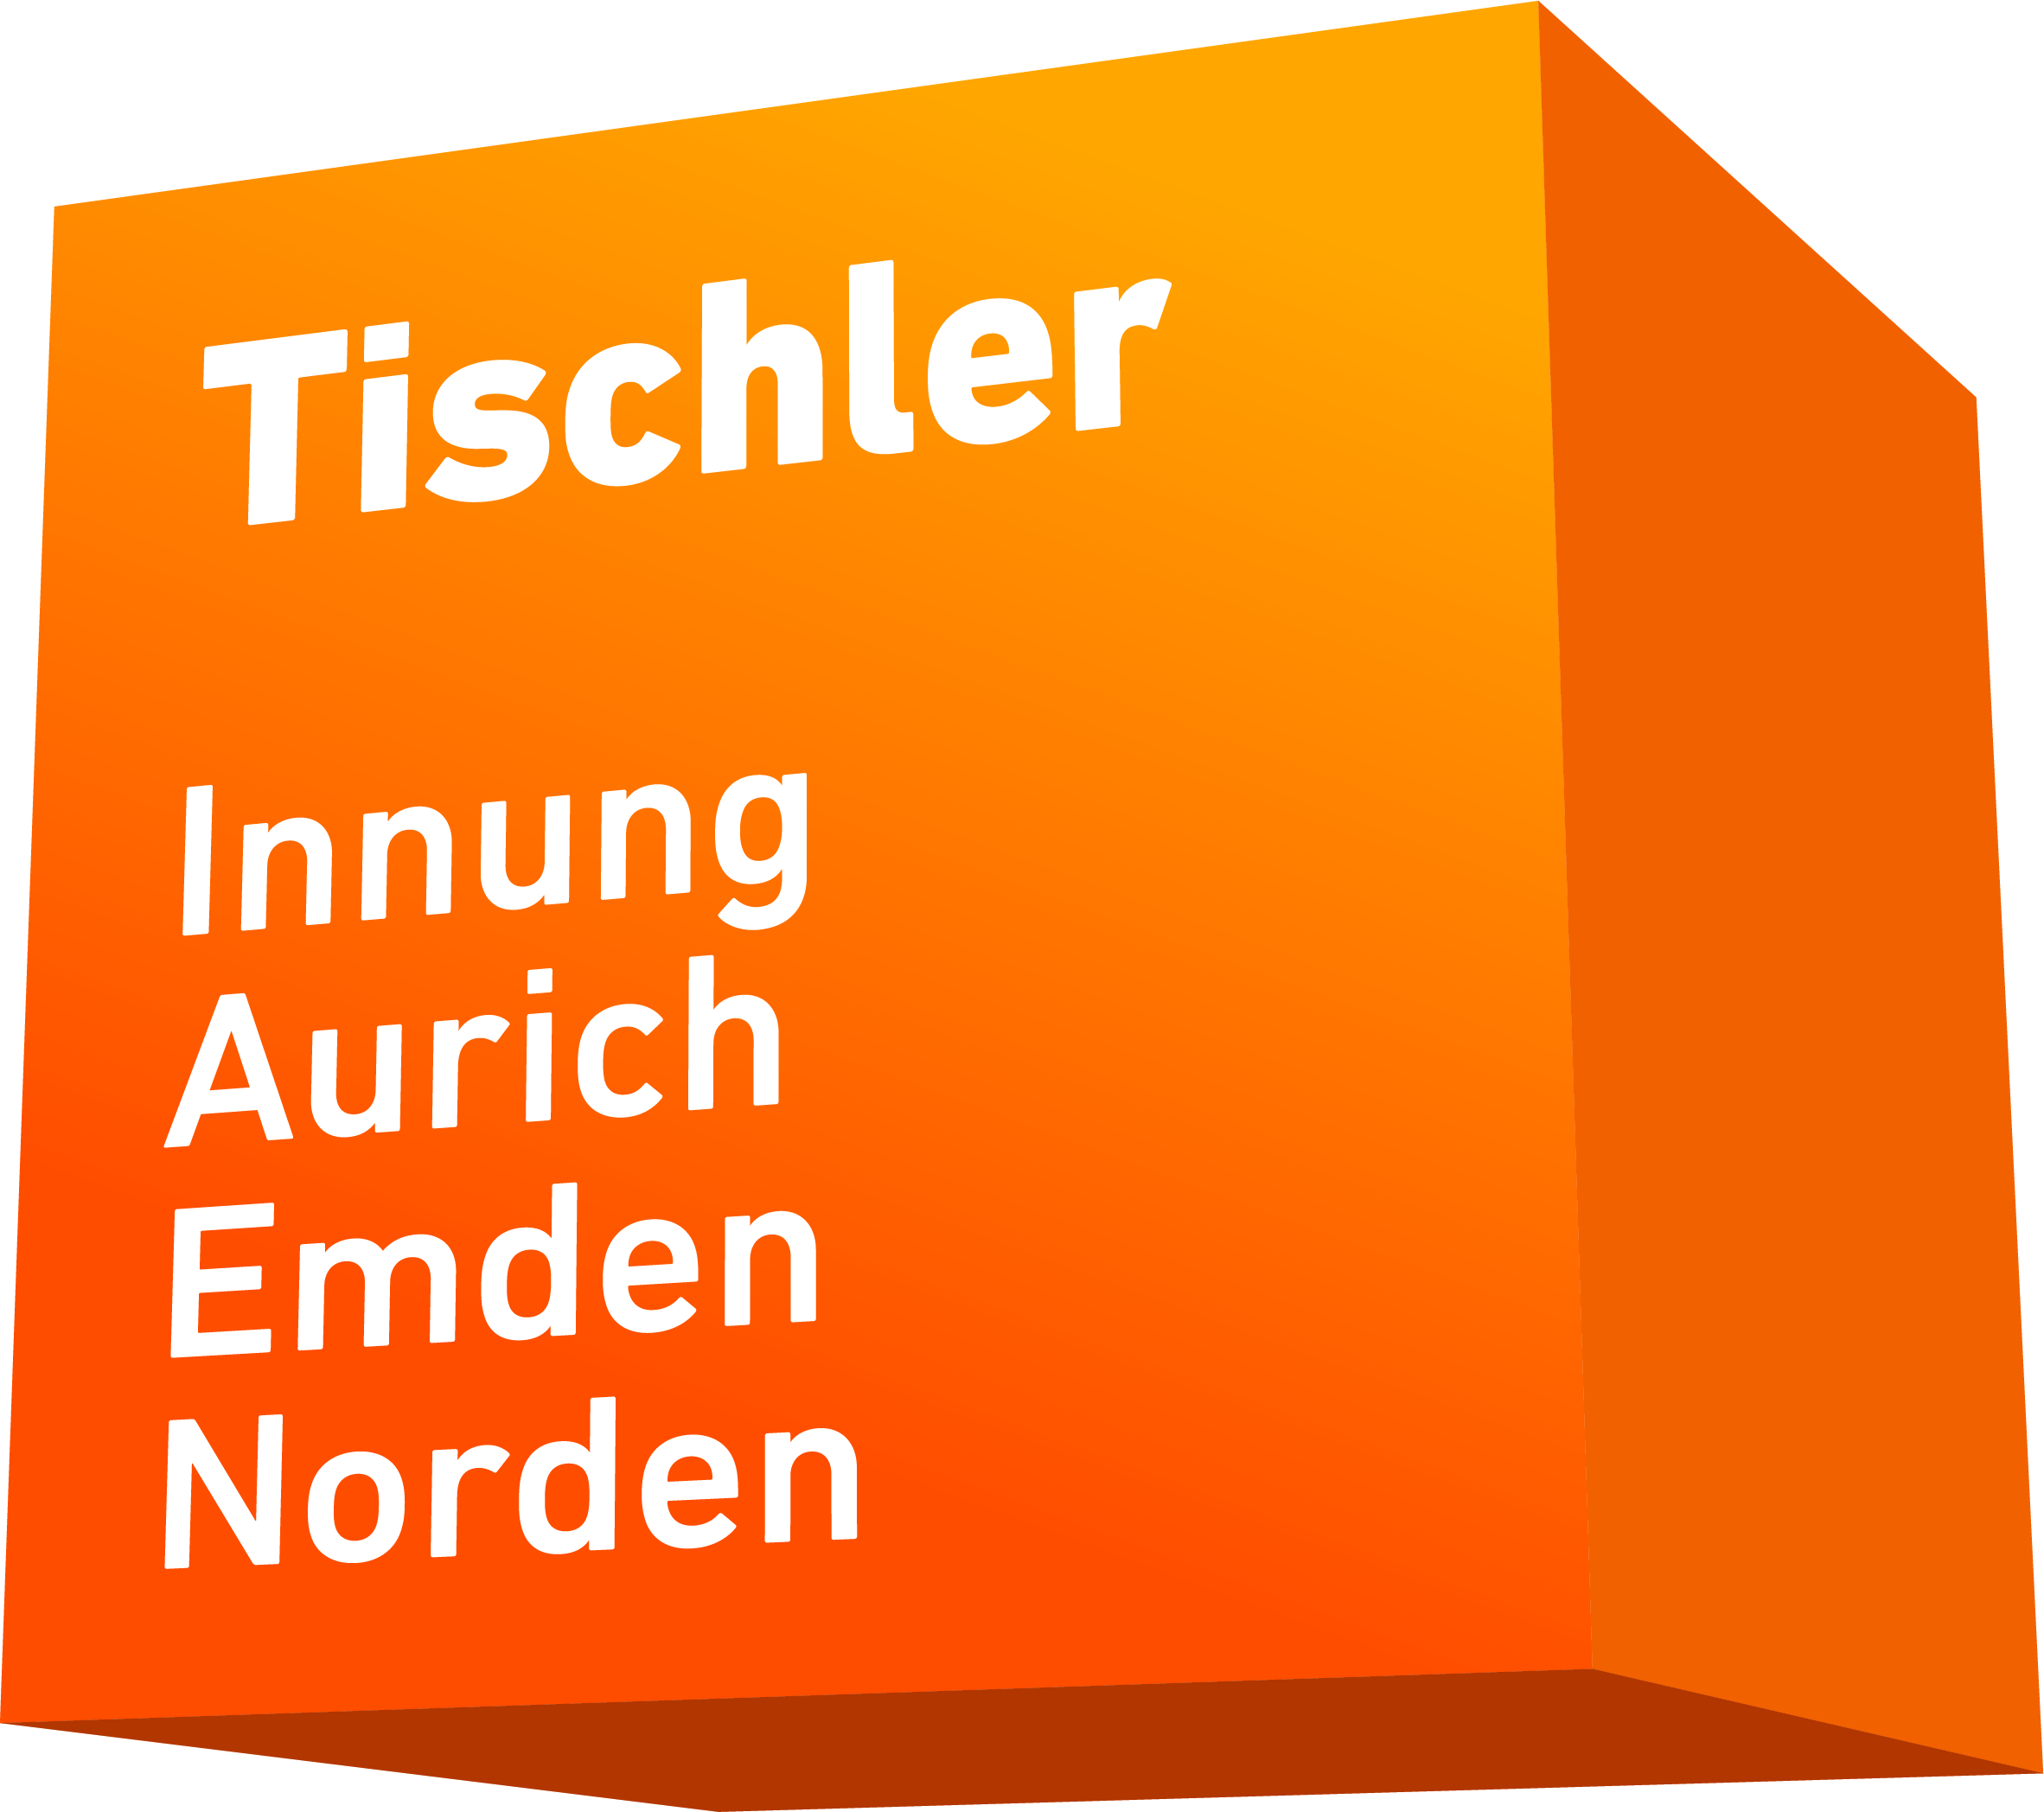 Tischler-Innung Aurich-Emden-Norden